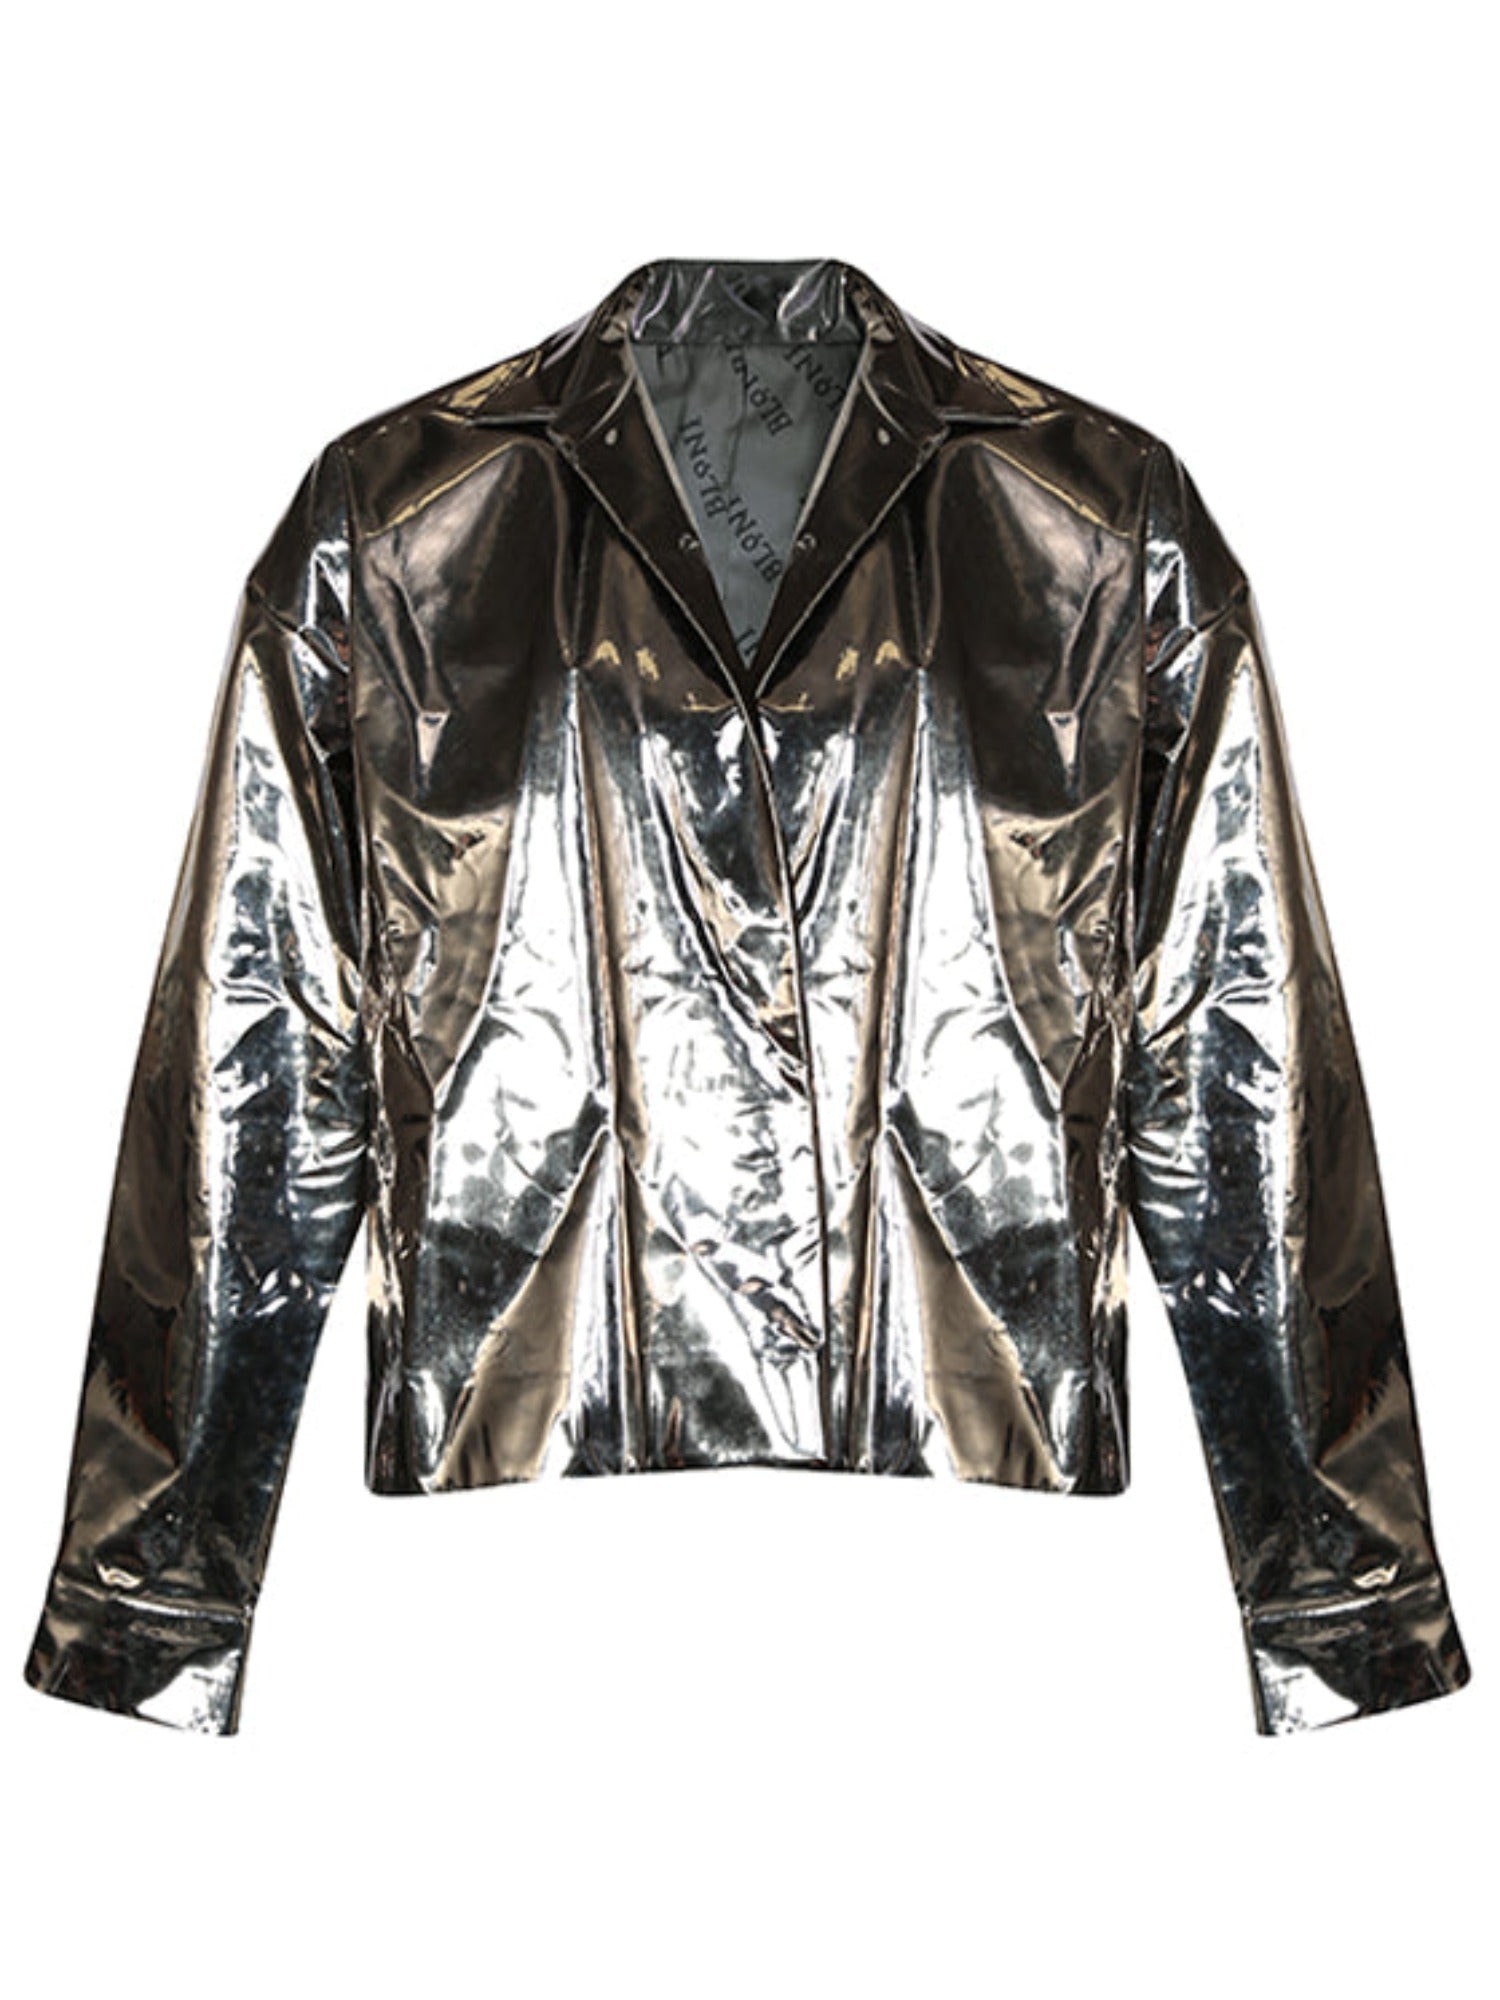 Gunmetal vegan leather jacket